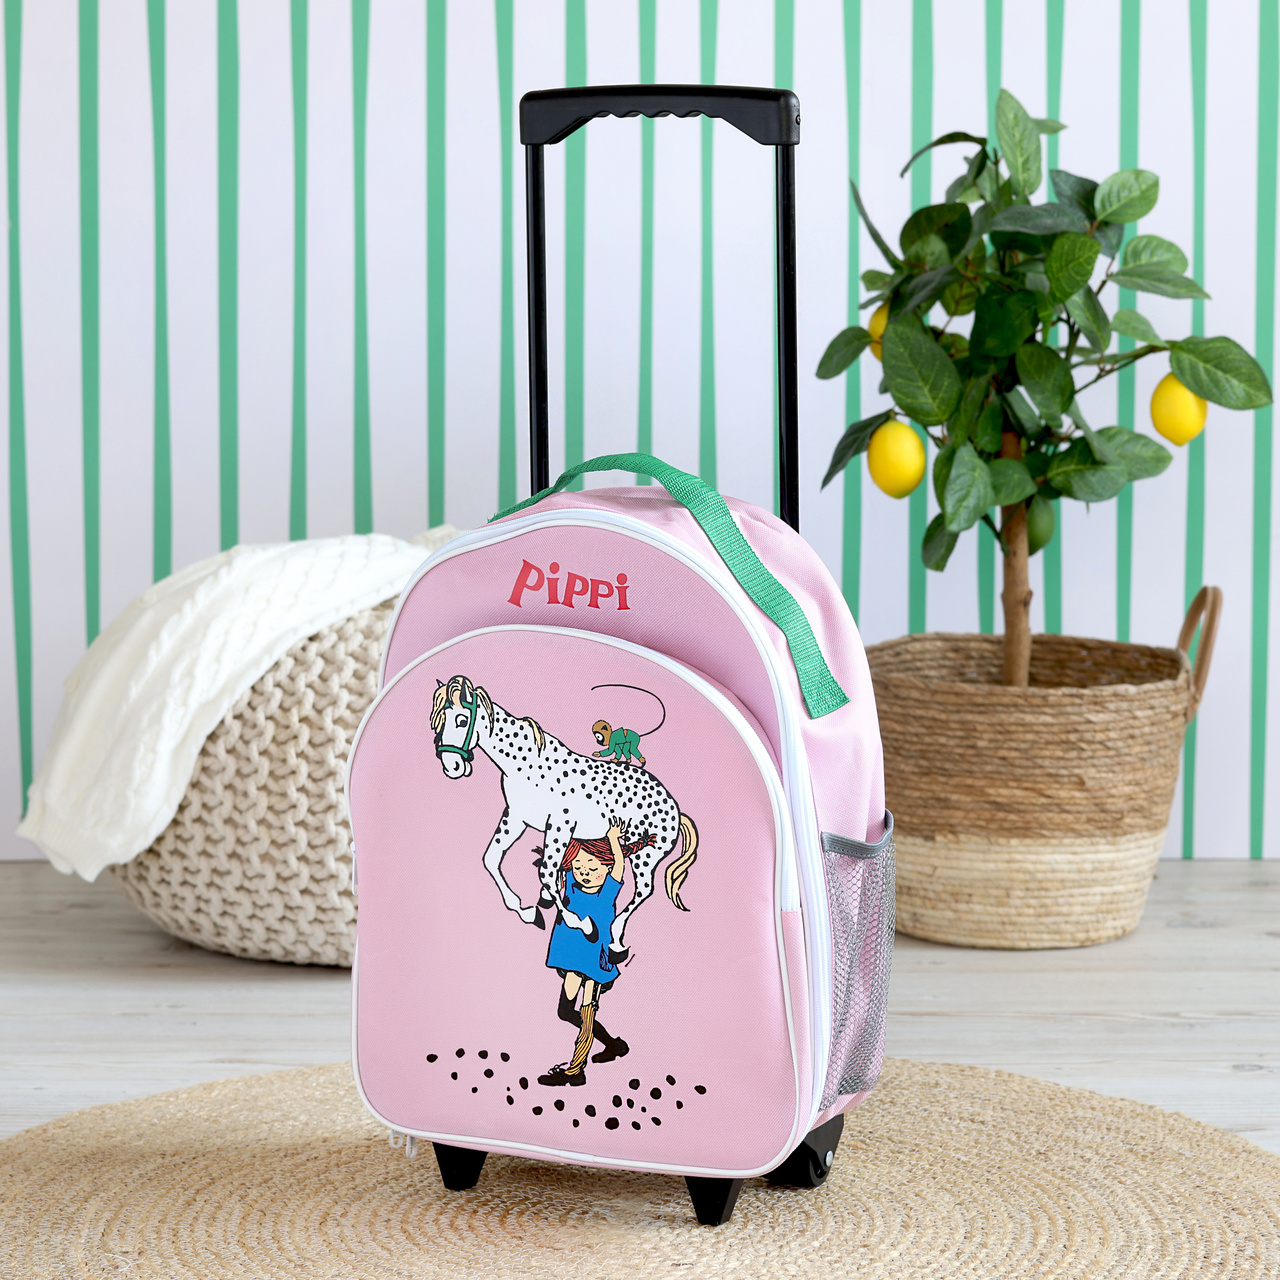 Kindertaschen & Accessoires pippi kindertasche reisetasche rosa